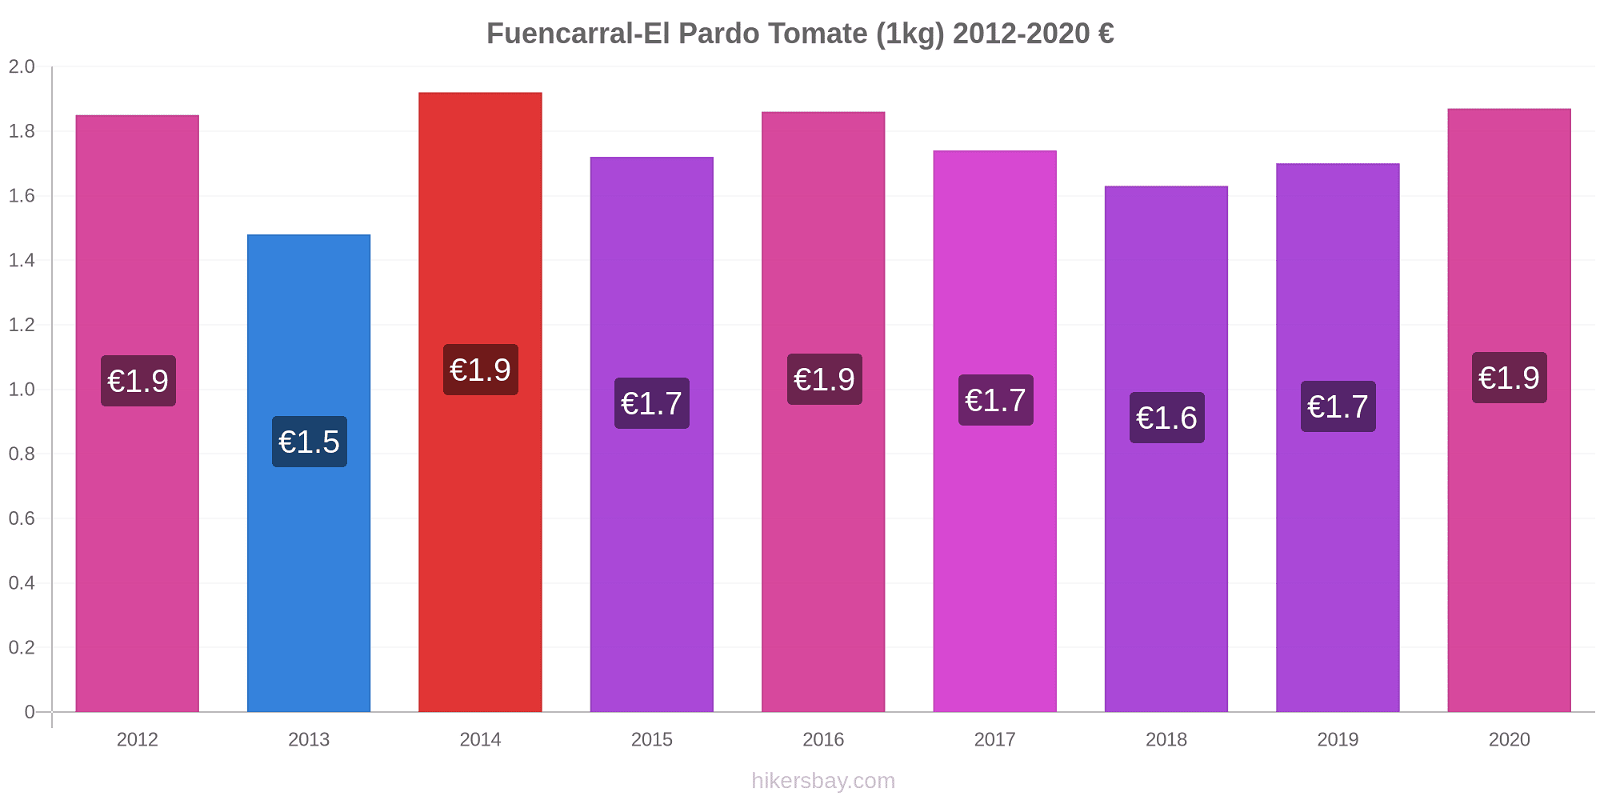 Fuencarral-El Pardo Preisänderungen Tomaten (1kg) hikersbay.com